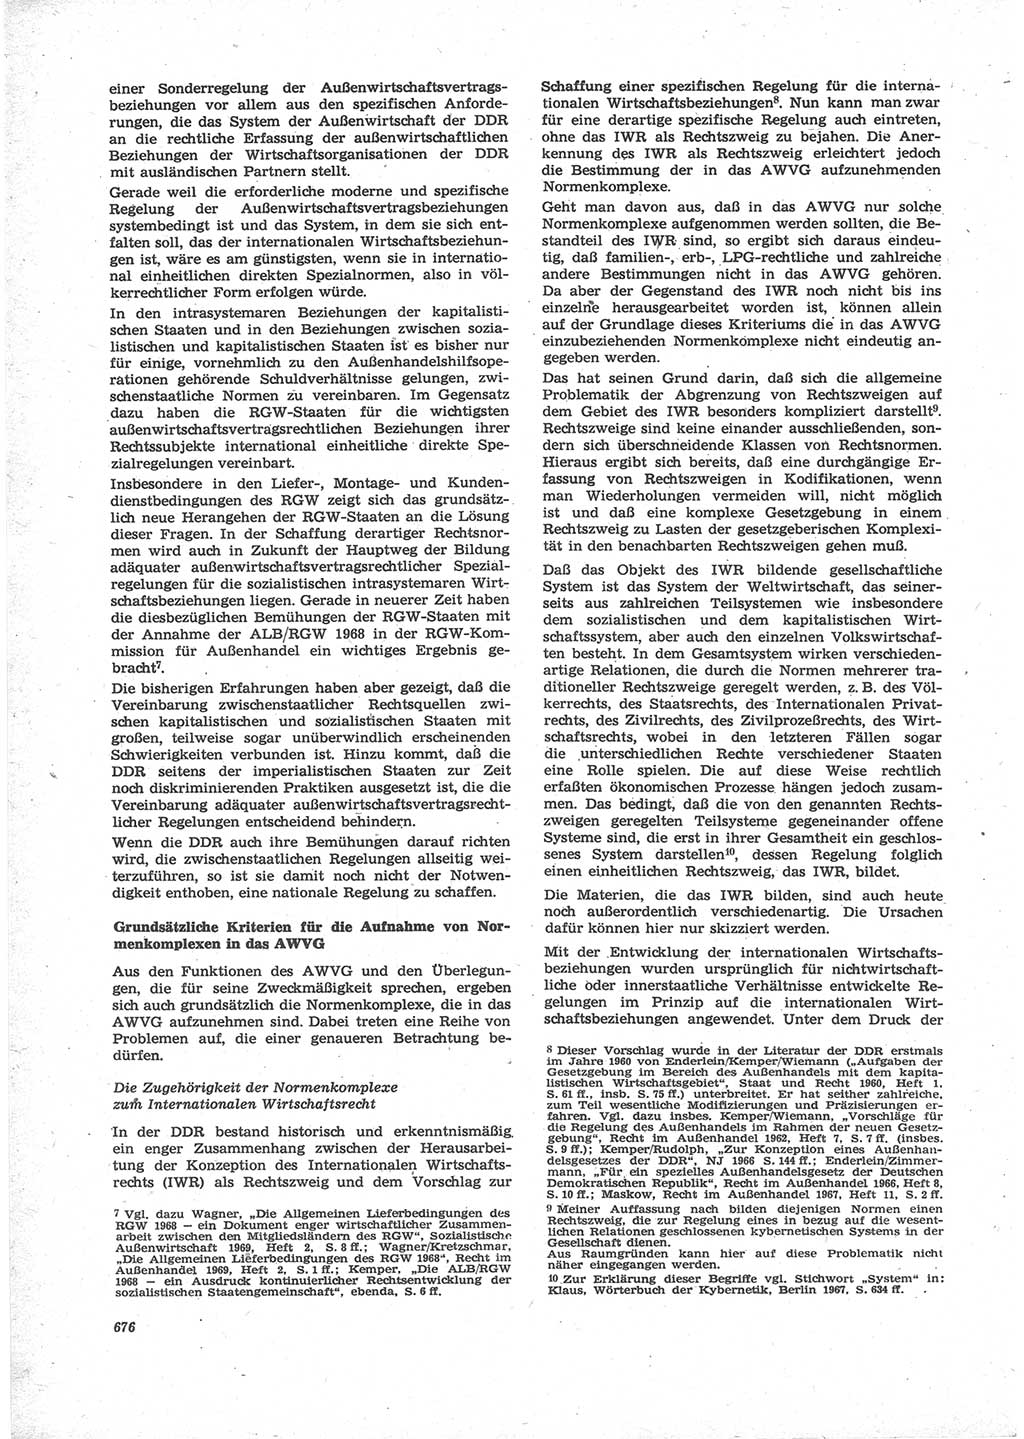 Neue Justiz (NJ), Zeitschrift für Recht und Rechtswissenschaft [Deutsche Demokratische Republik (DDR)], 24. Jahrgang 1970, Seite 676 (NJ DDR 1970, S. 676)